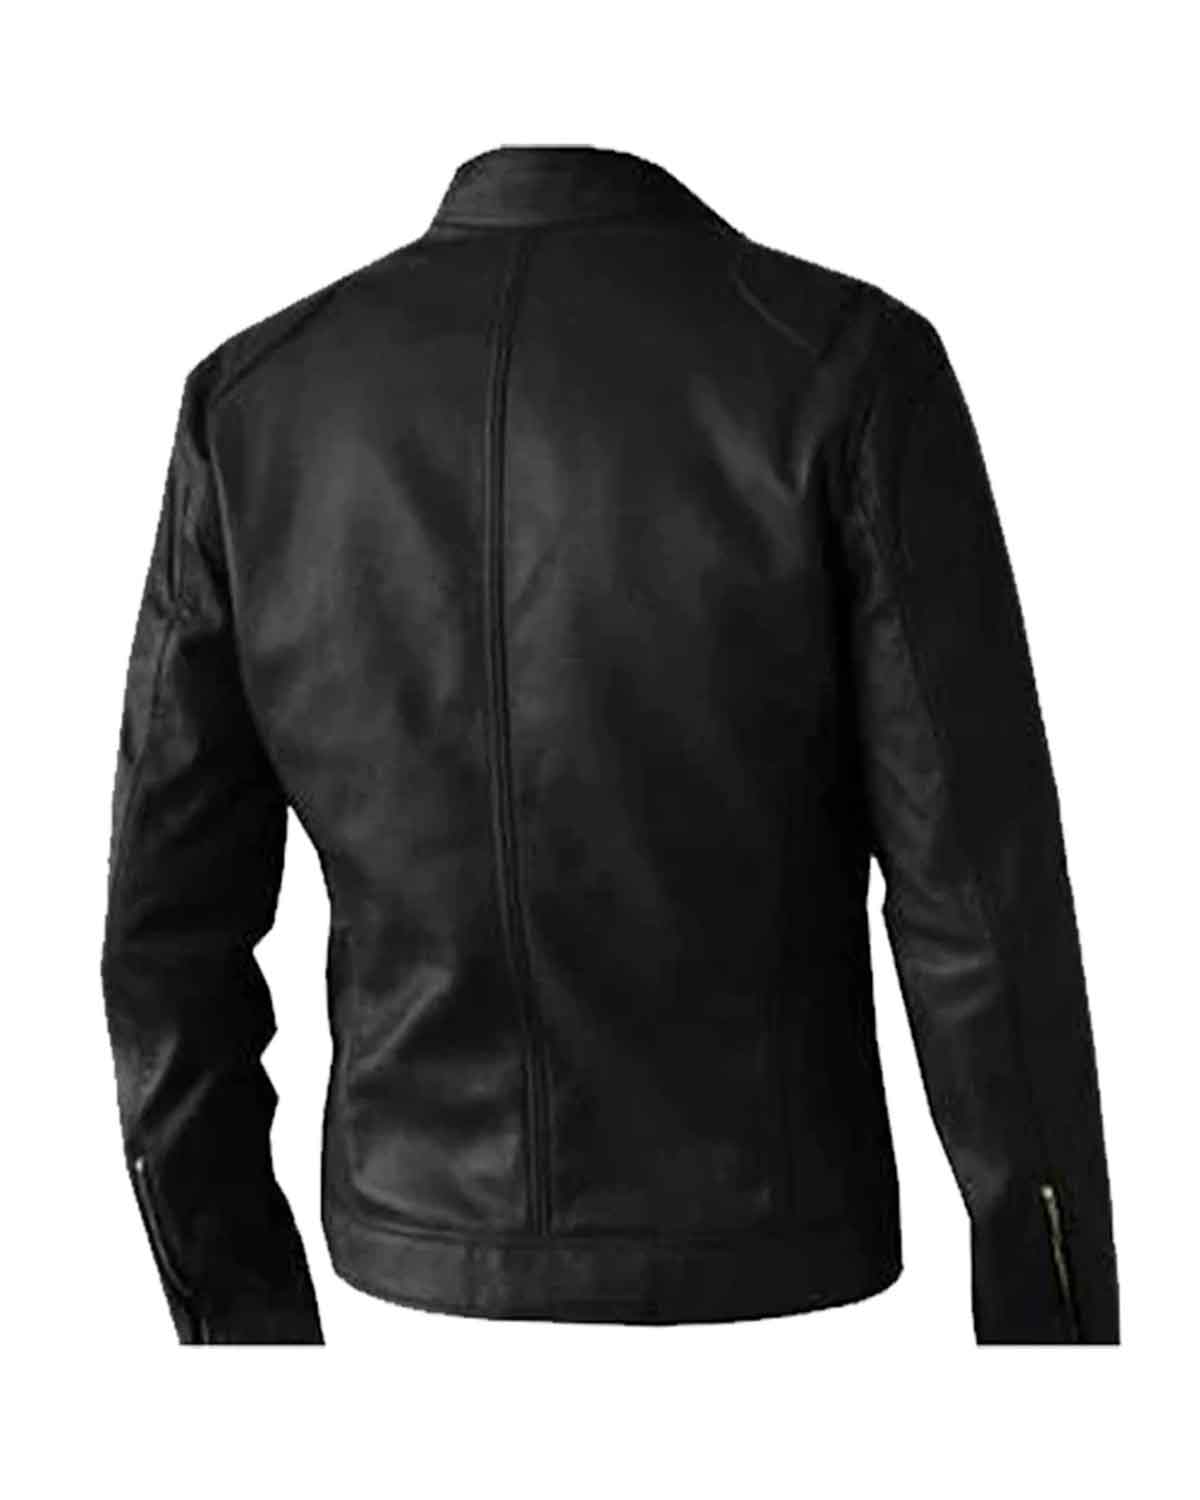 Mens Black Genuine Leather Biker Jacket